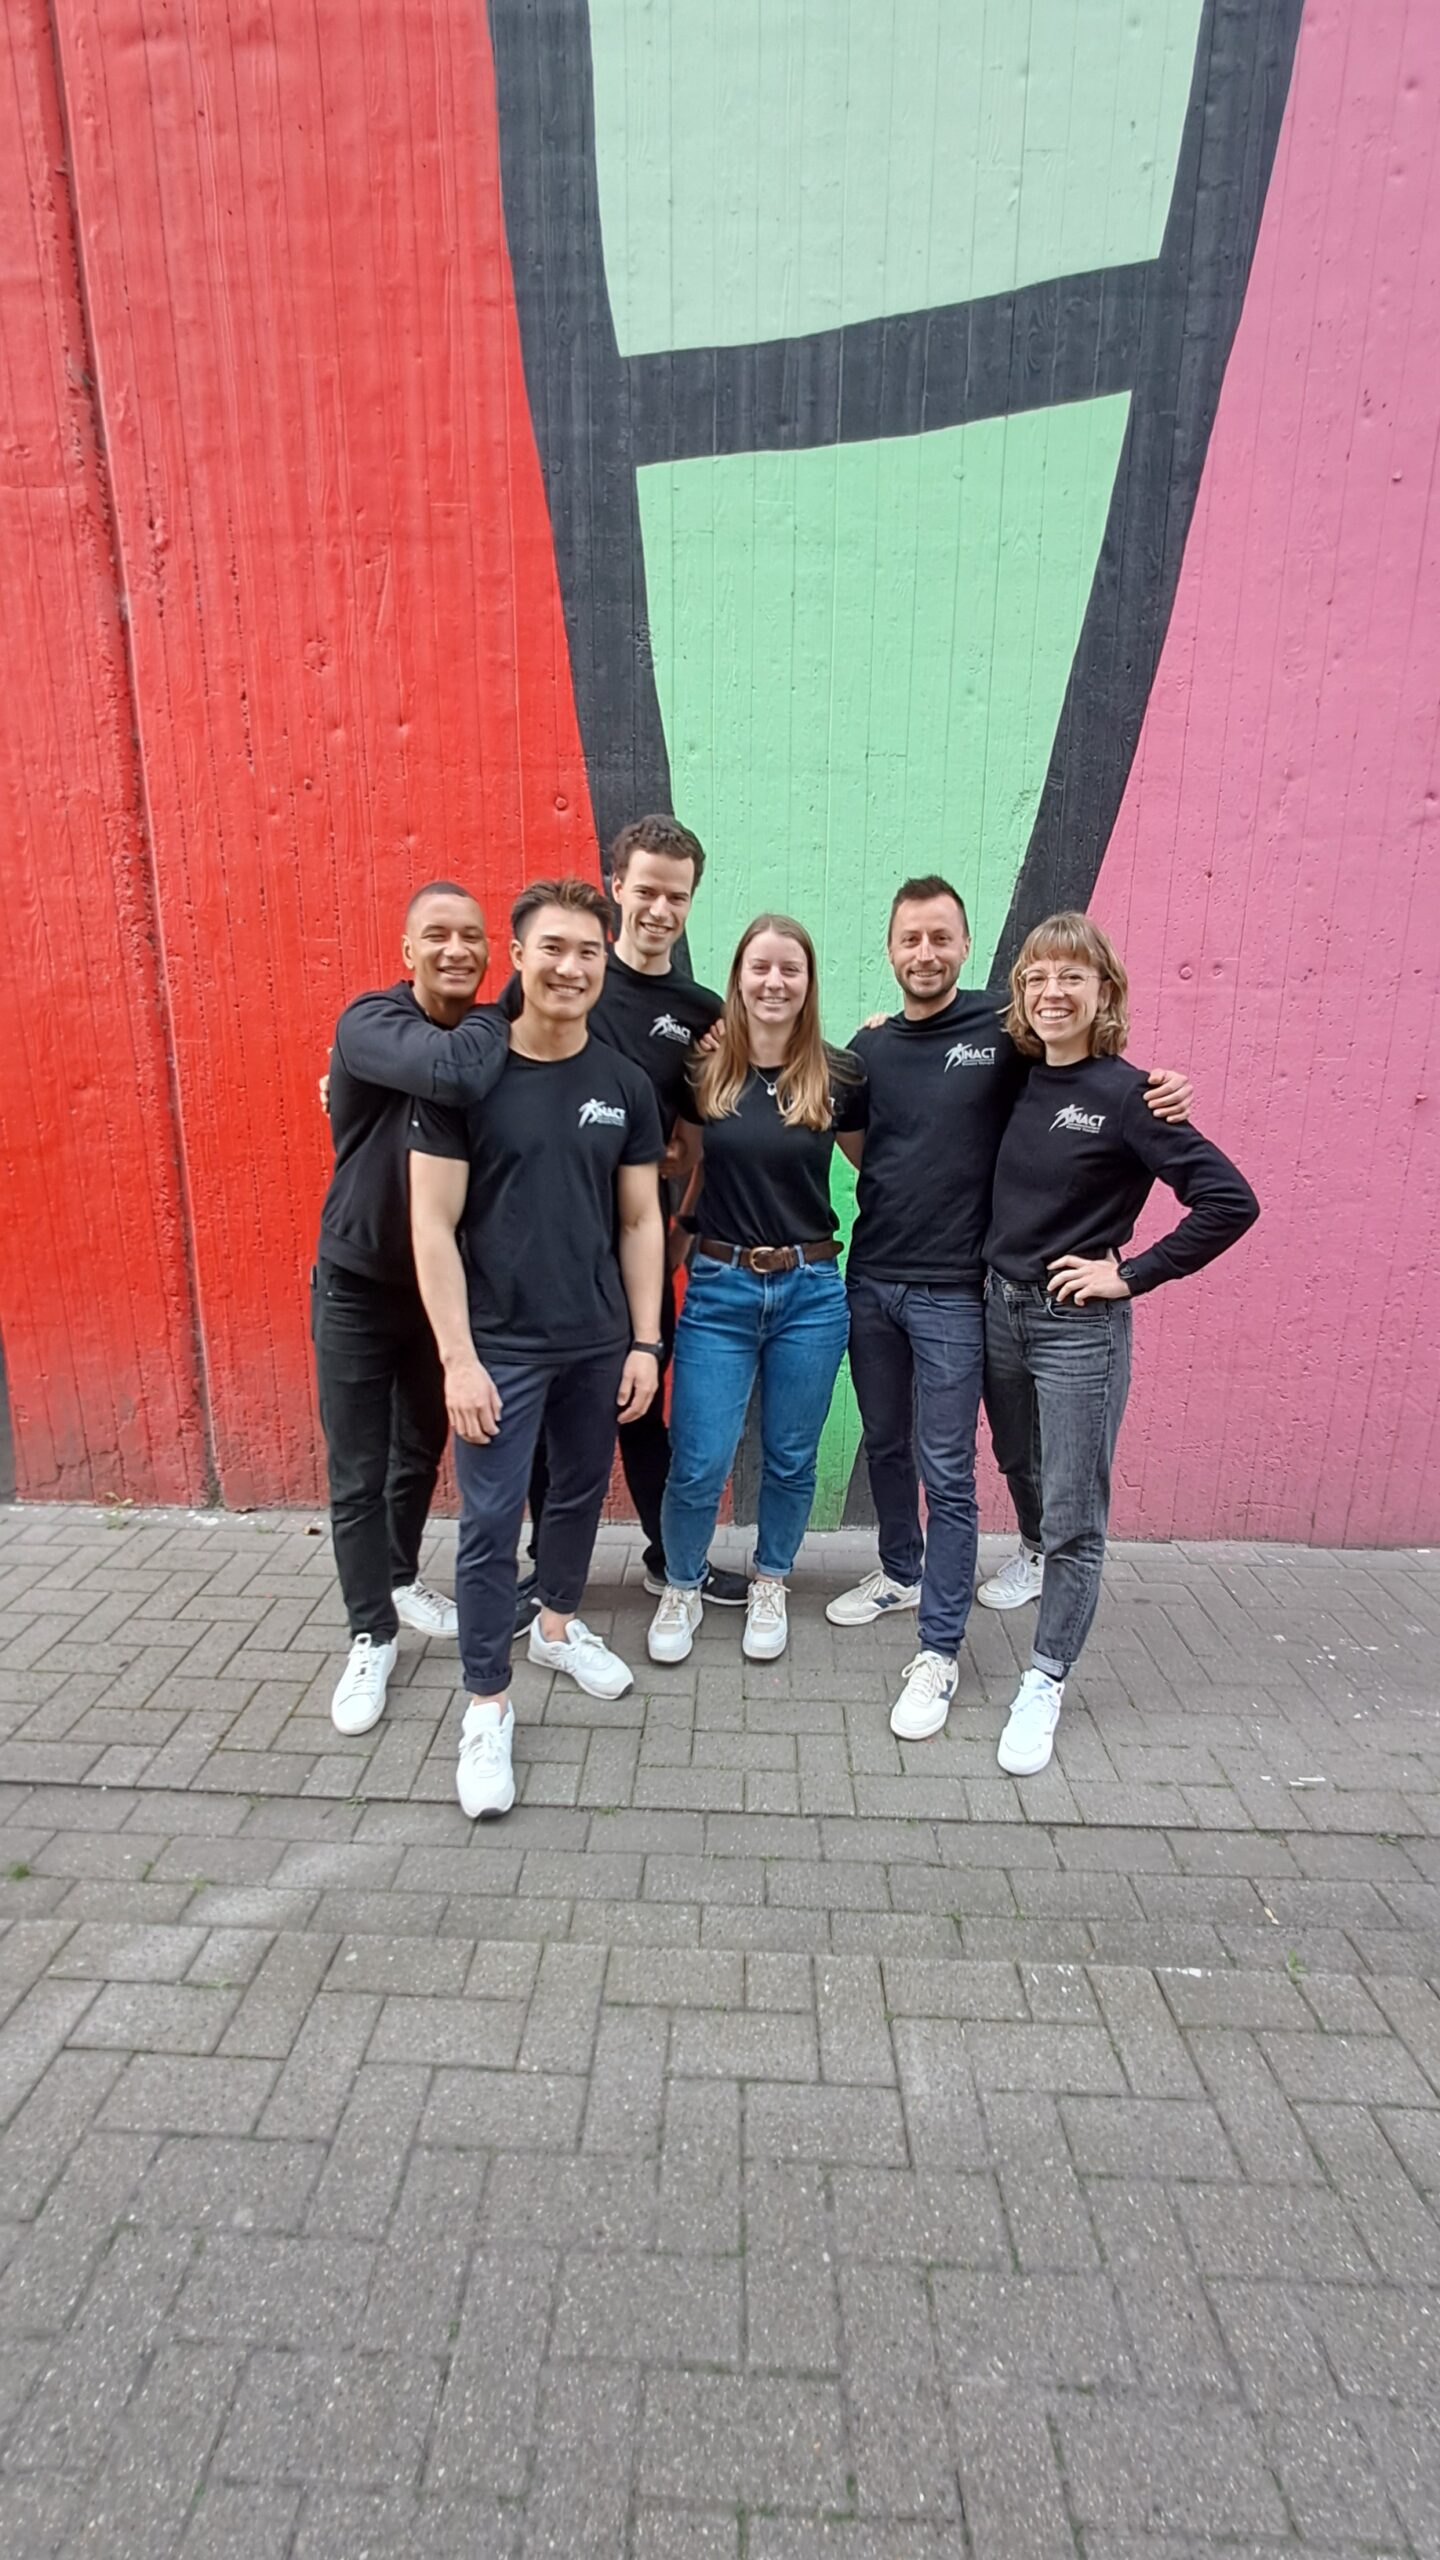 Team Kinact sportkinesist Mechelen